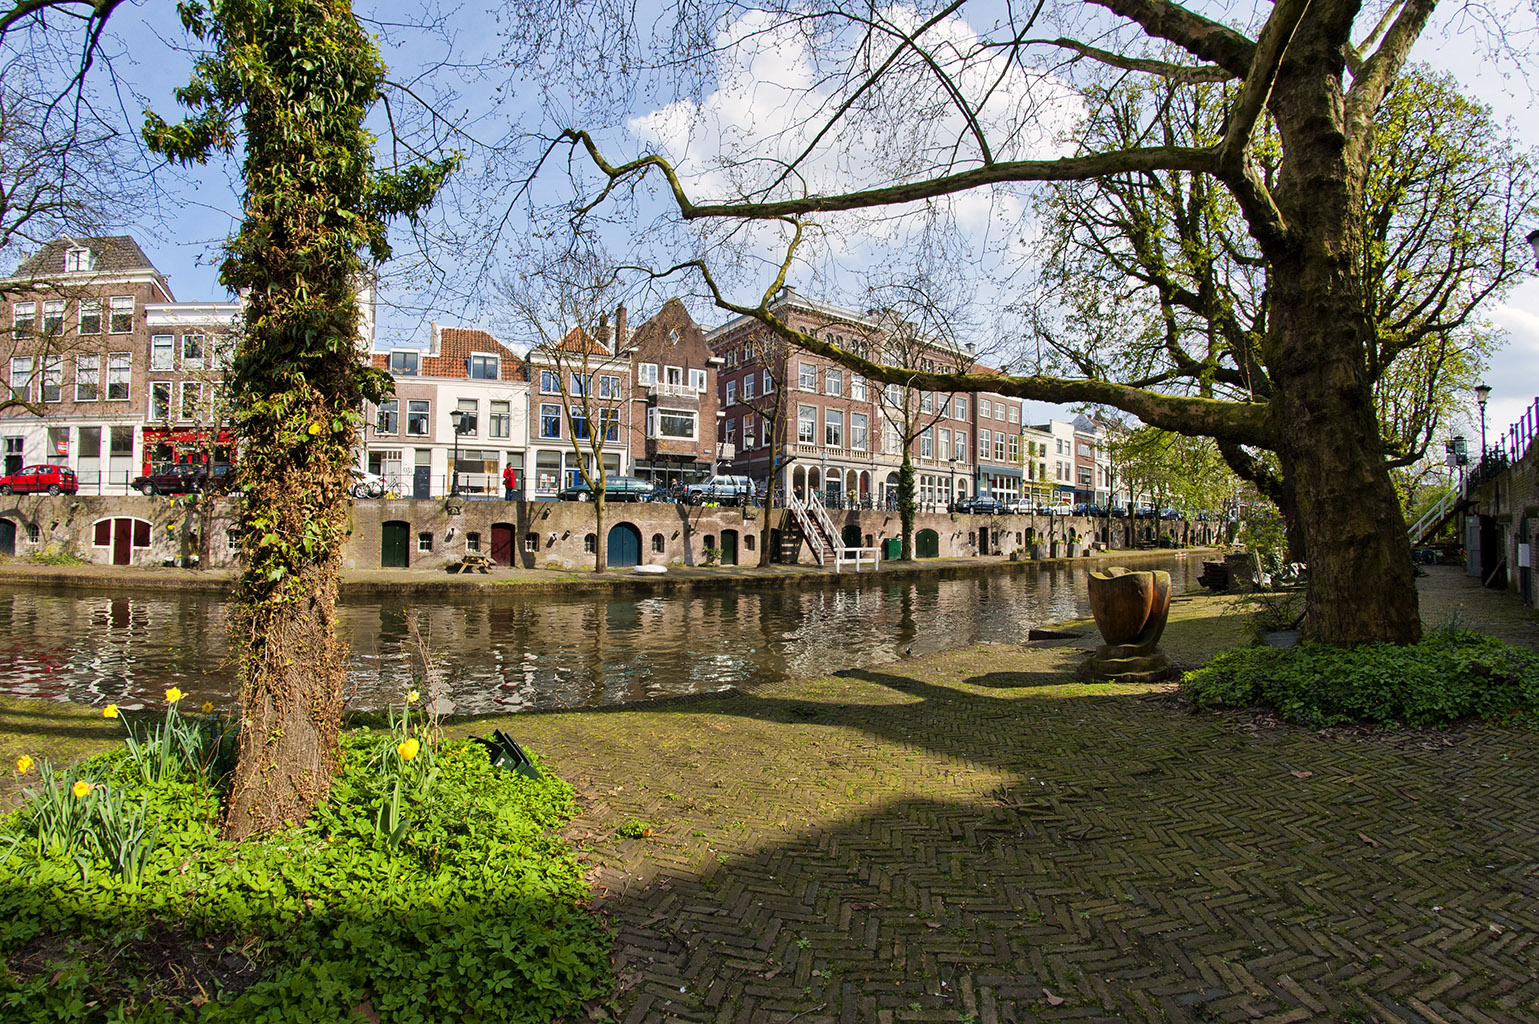 Utrecht, The Netherlands